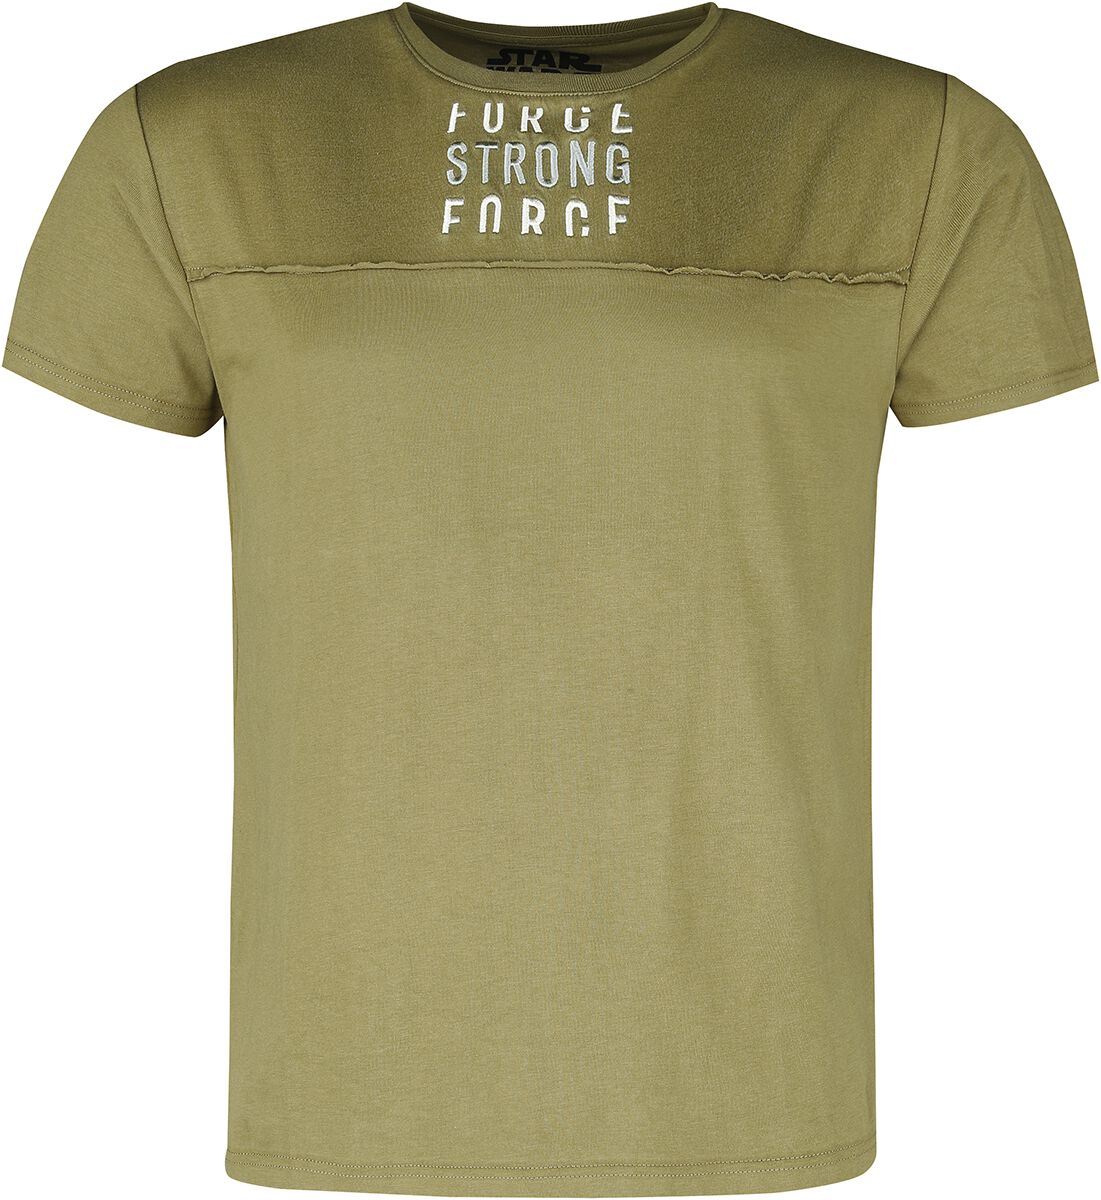 Force T-Shirt oliv von Star Wars